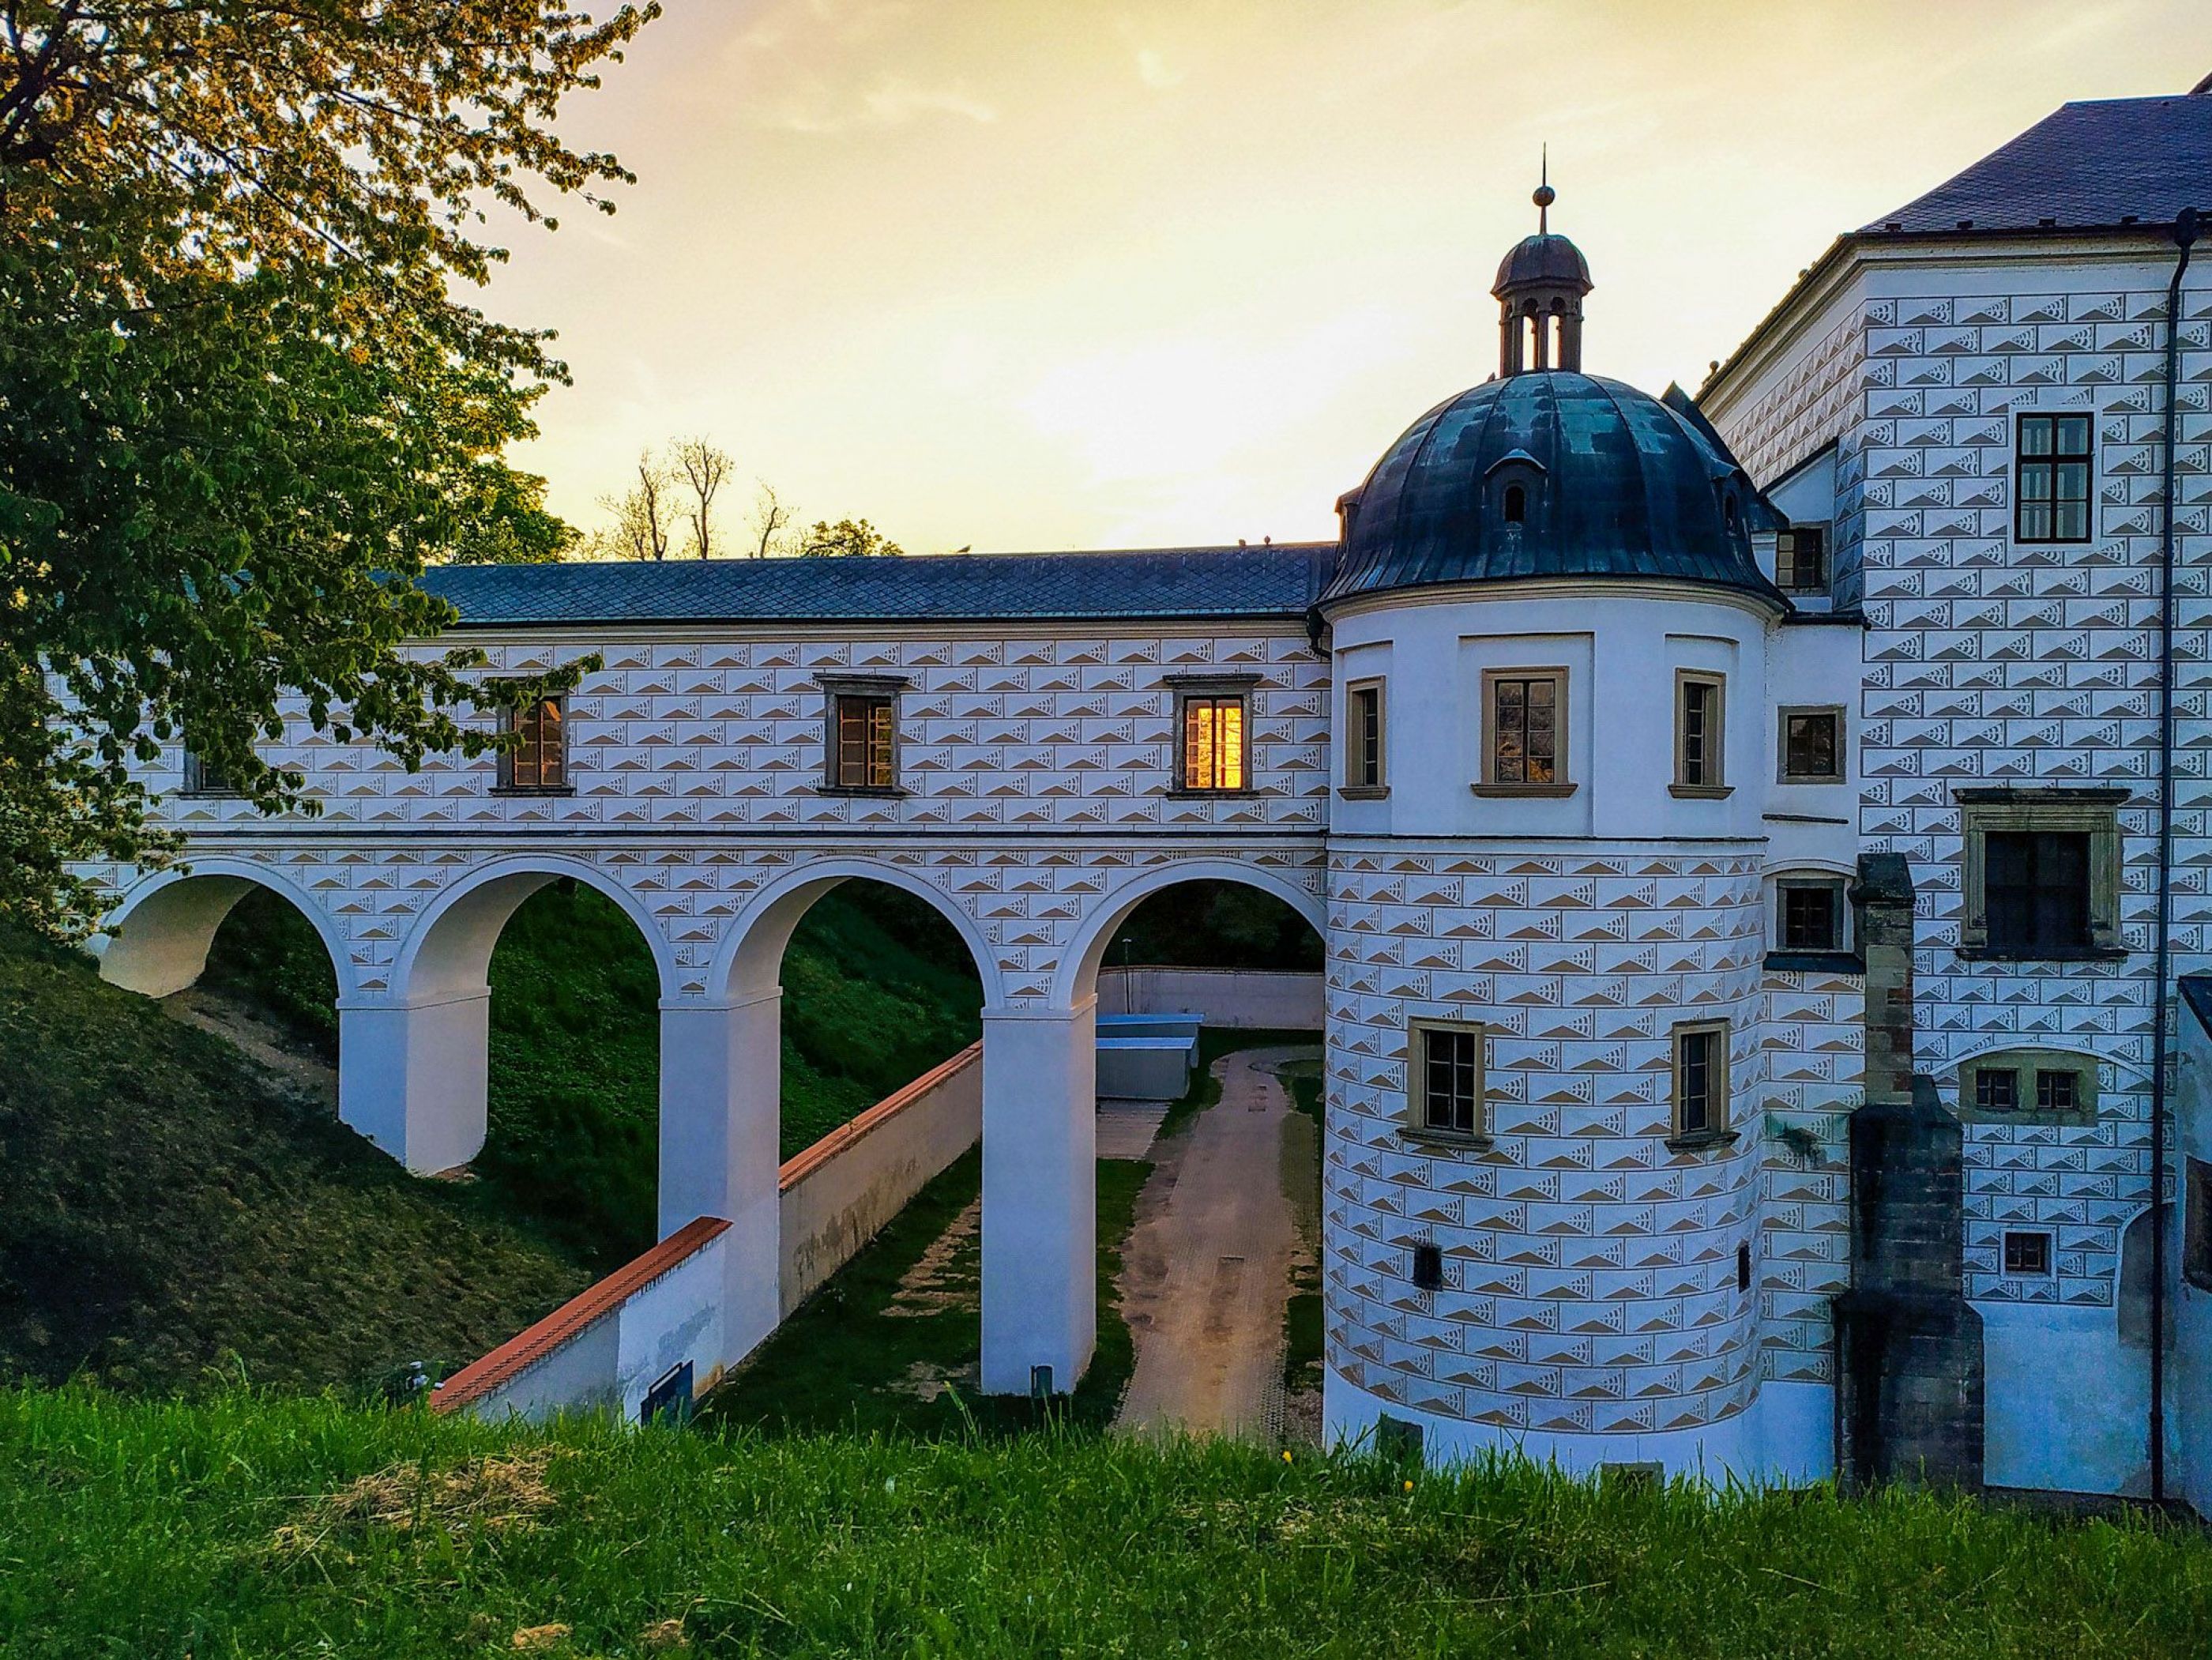 Castle Pardubice